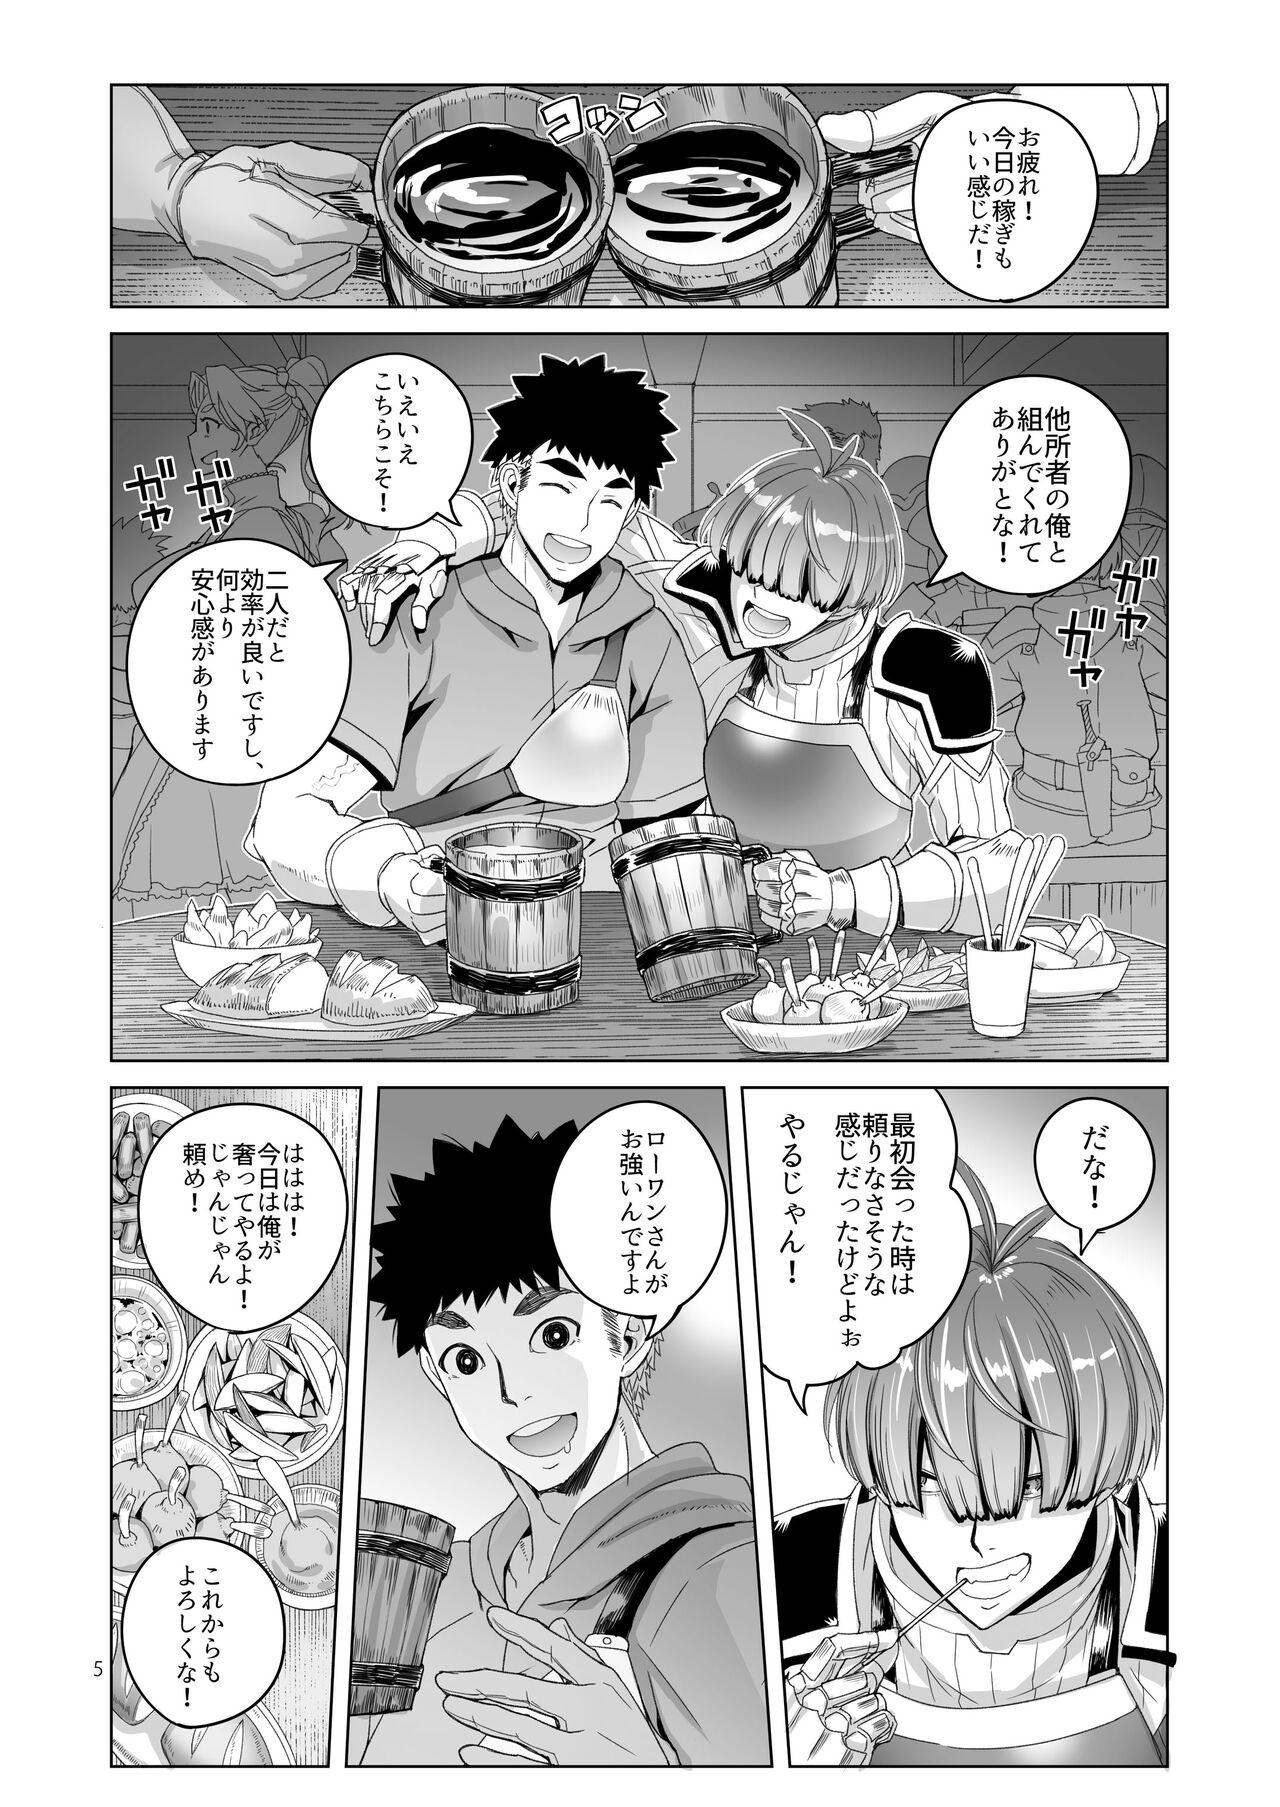 Amazing Rouwan nyokenshi wa kakusenai - Original Kashima - Page 4